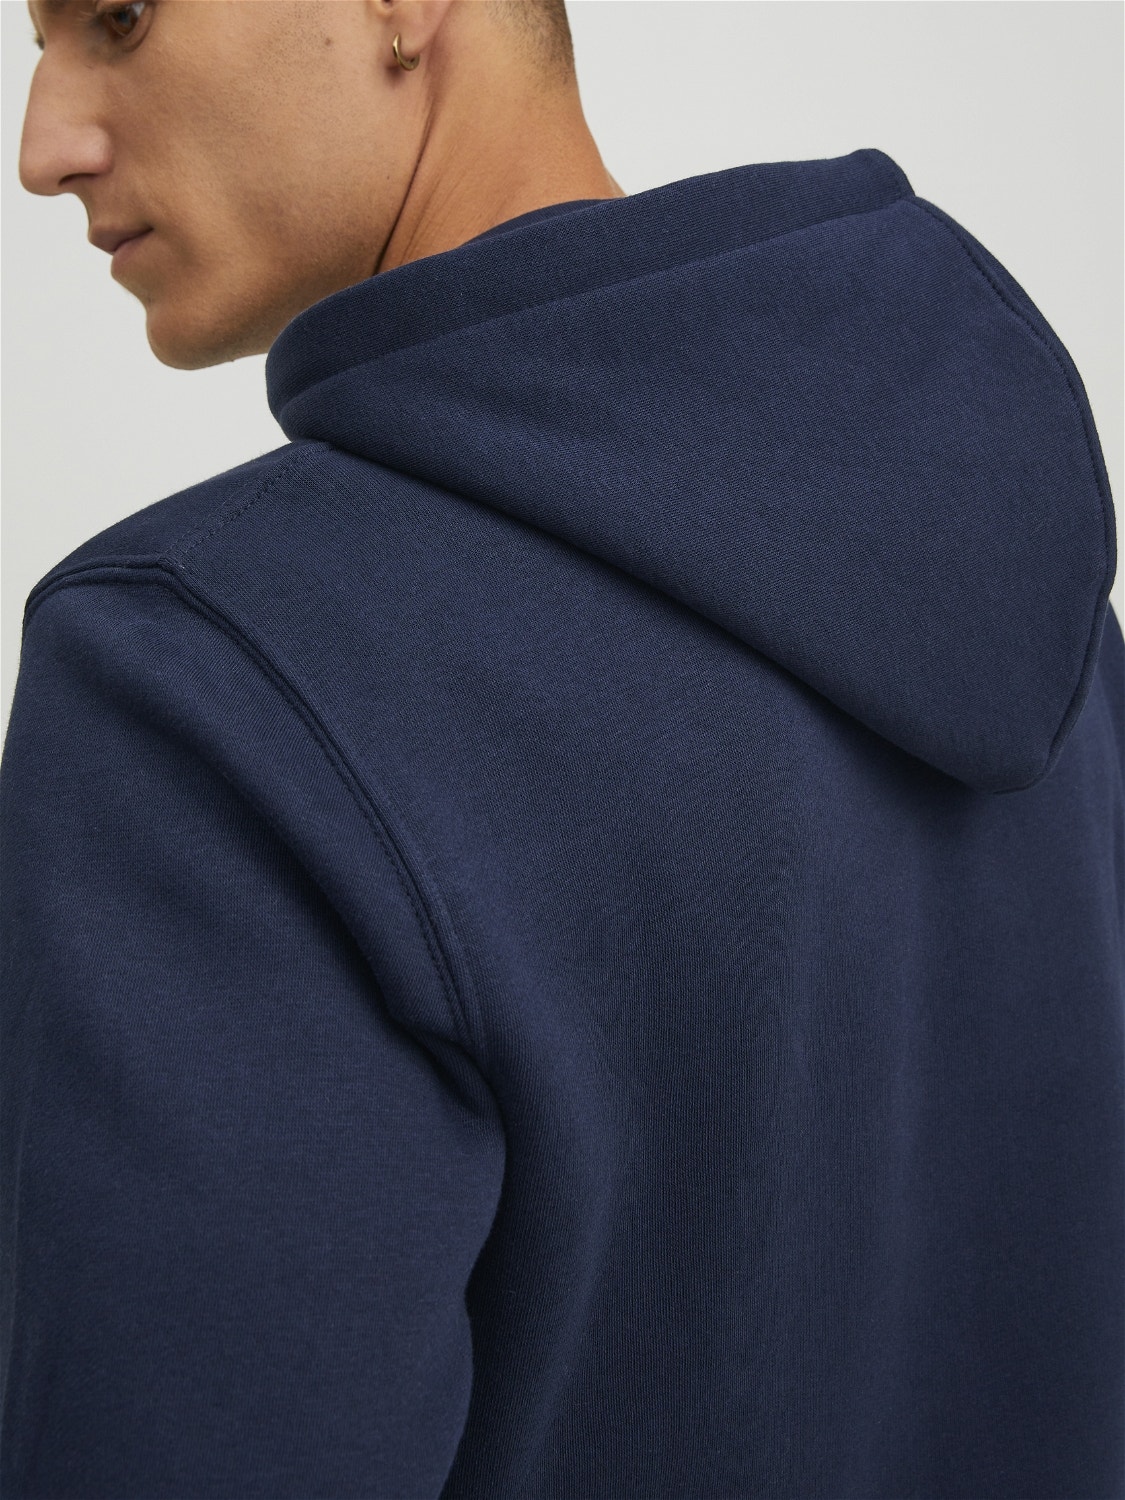 Jack & Jones Plain Zip hoodie -Navy Blazer - 12210830